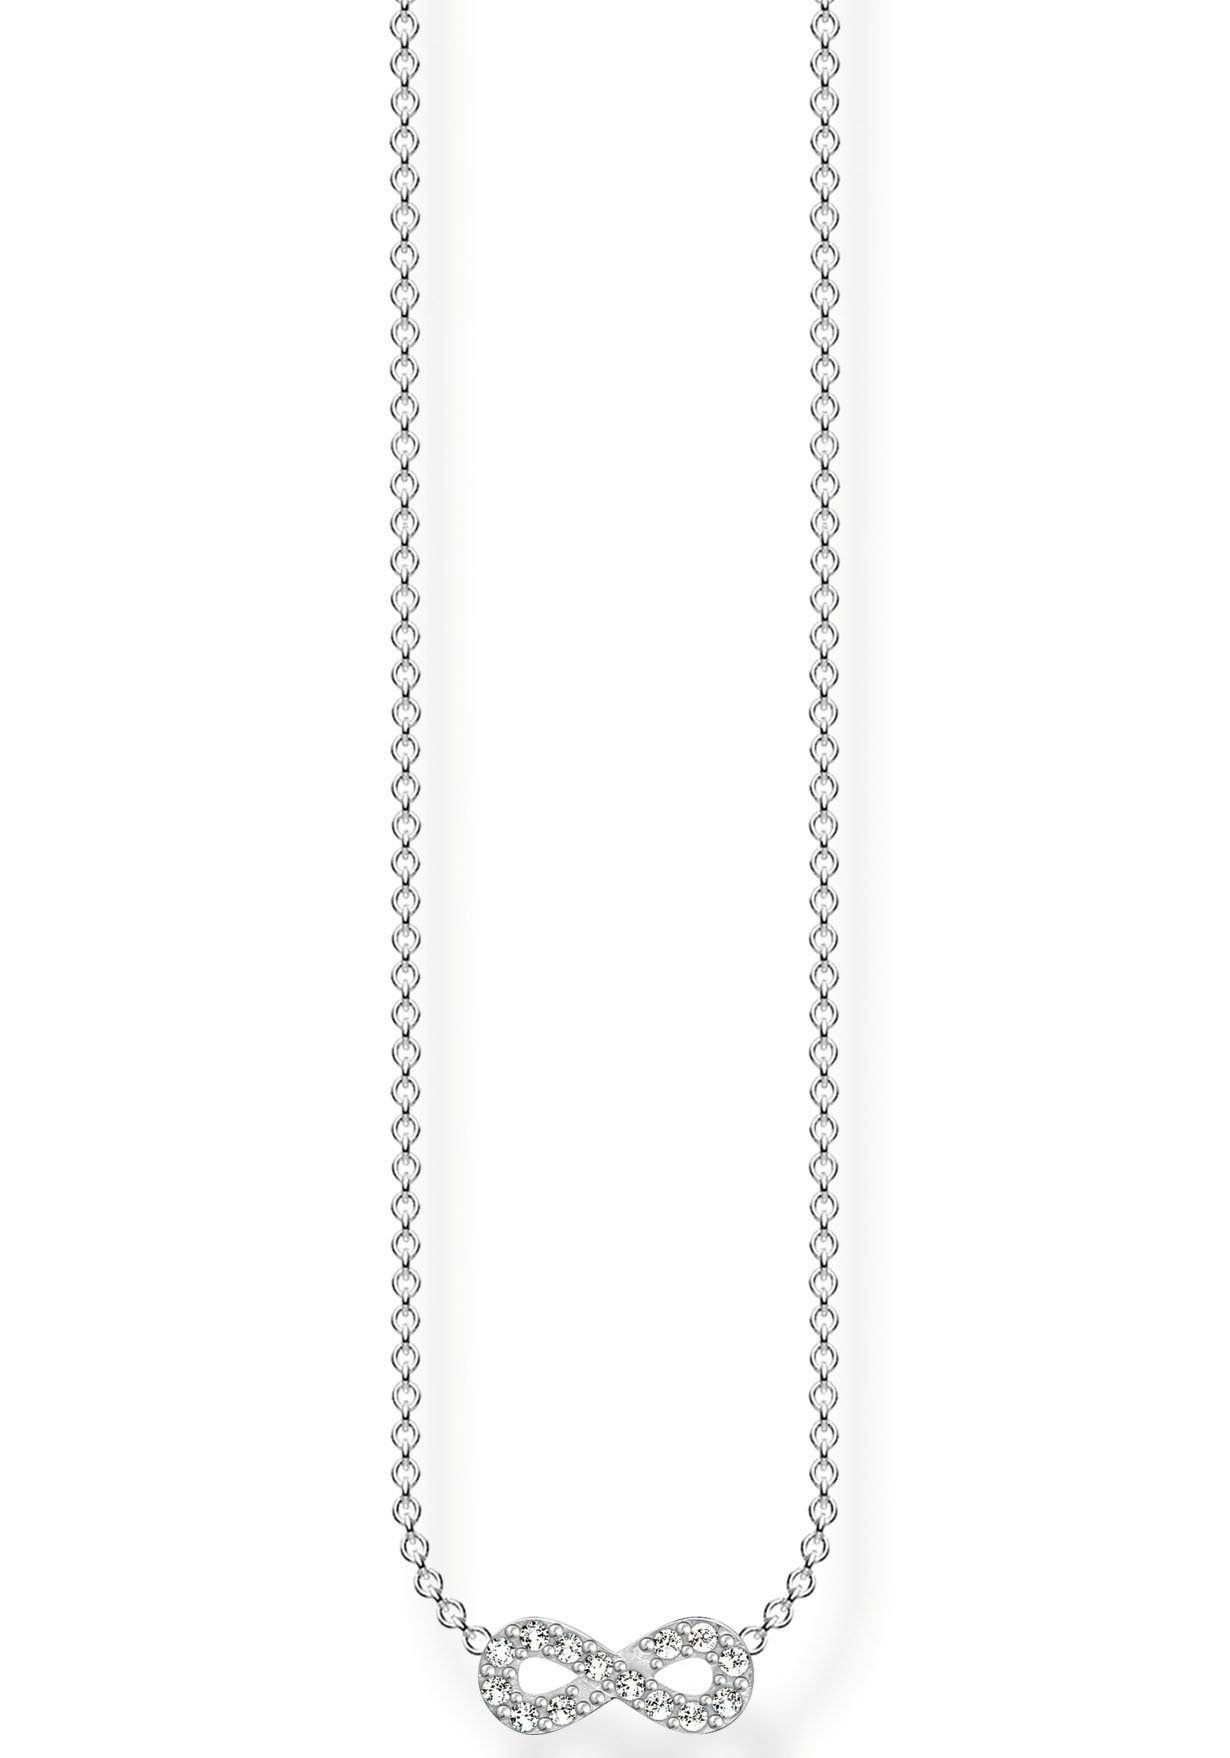 THOMAS SABO Kette mit Anhänger Infinity/Unendlichkeitsschleife,  KE2124-051-14-L45V, mit Zirkonia (synth), Das filigrane, funkelnde  Infinity-Zeichen der Kette macht jeden Look perfekt